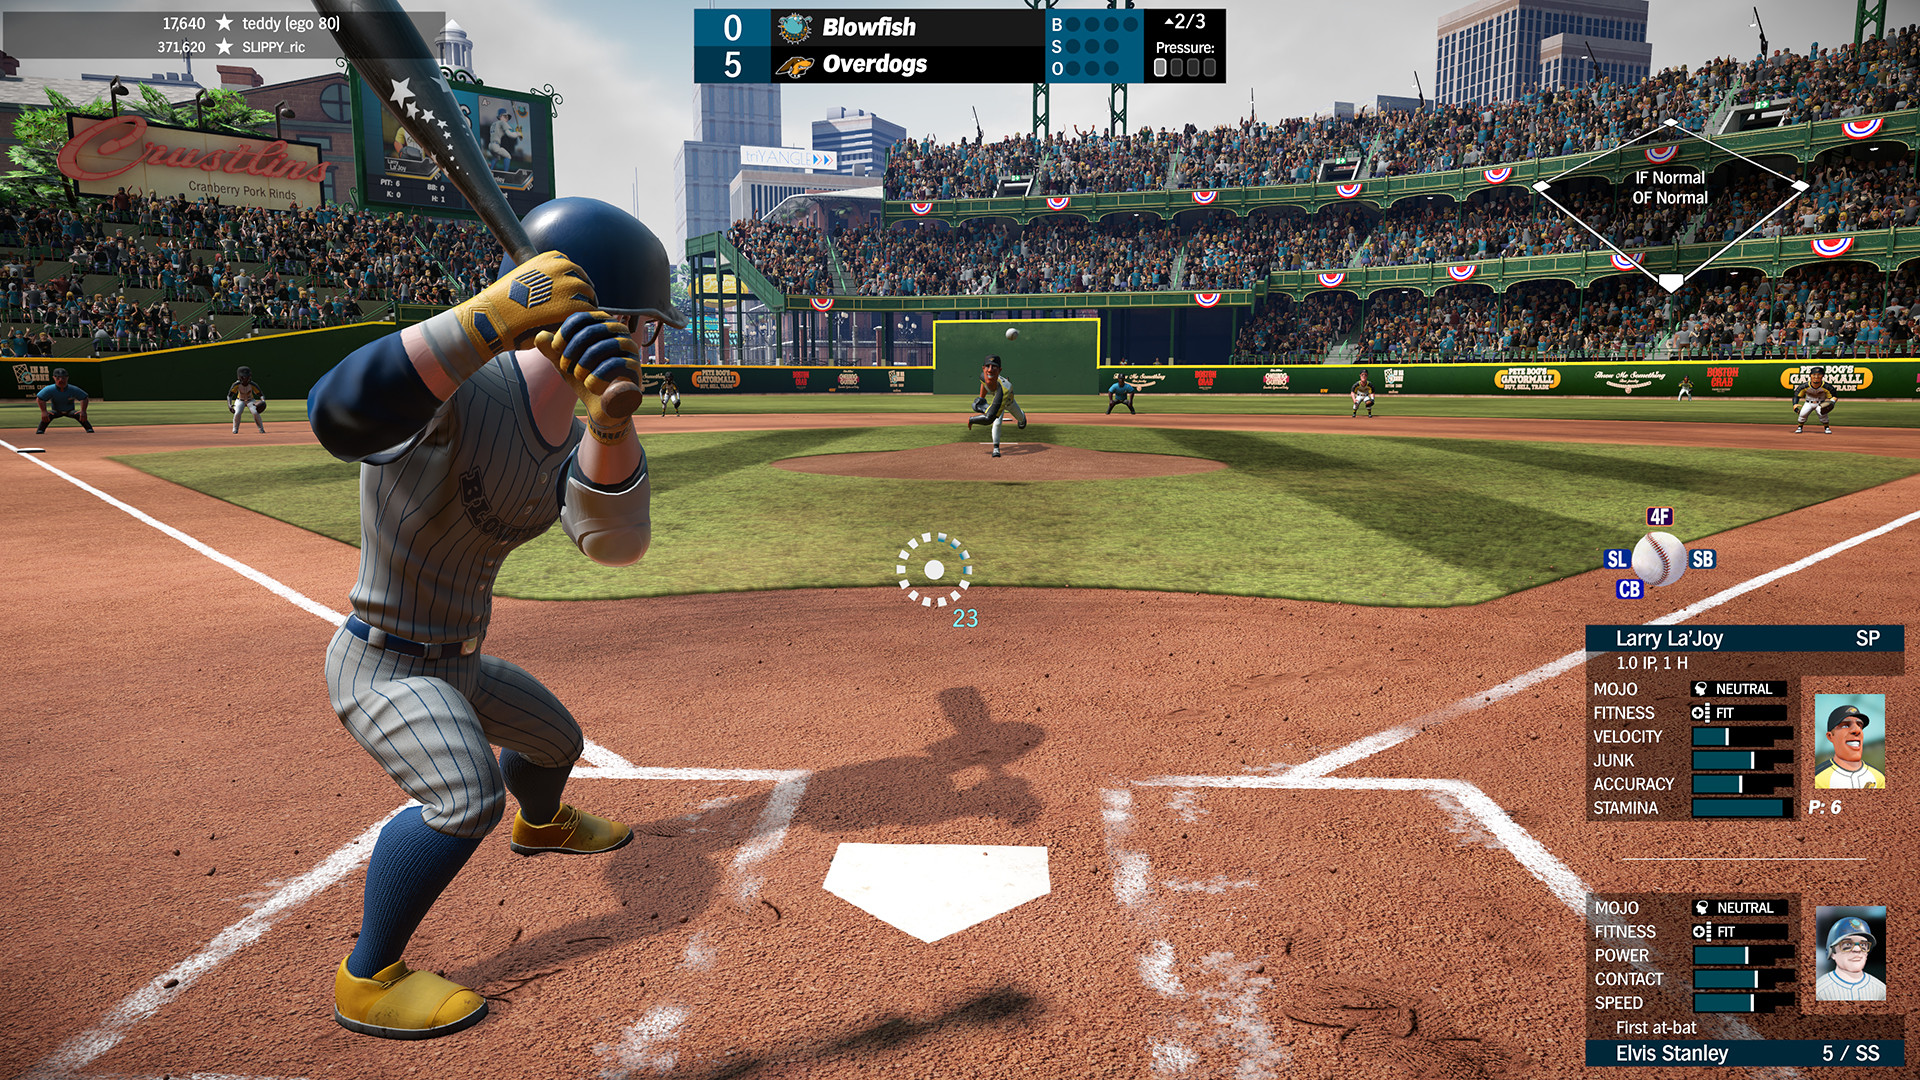 Super Mega Baseball 3 on Steam